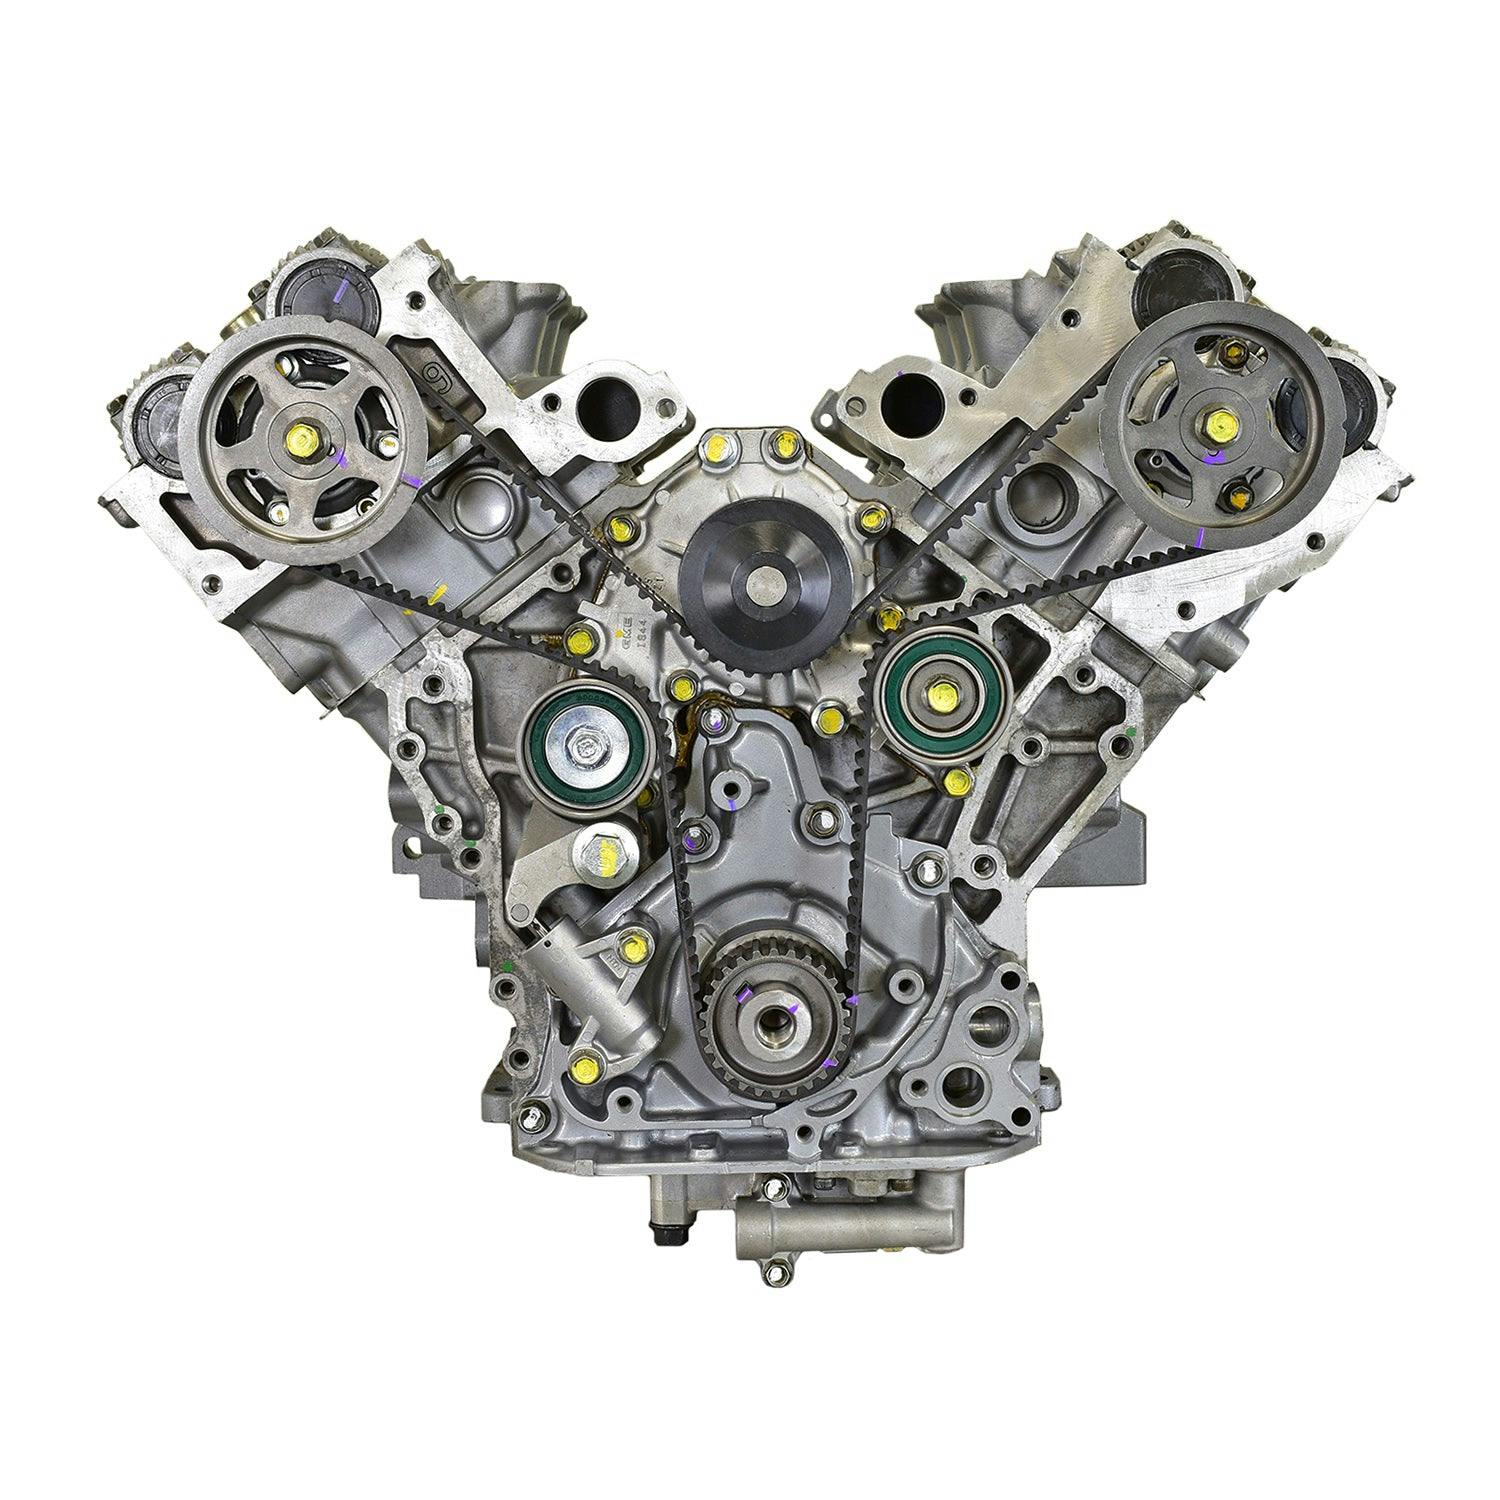 3.2L V6 Engine for 1997-2004 Honda Passport/Isuzu Amigo, Rodeo, Rodeo Sport